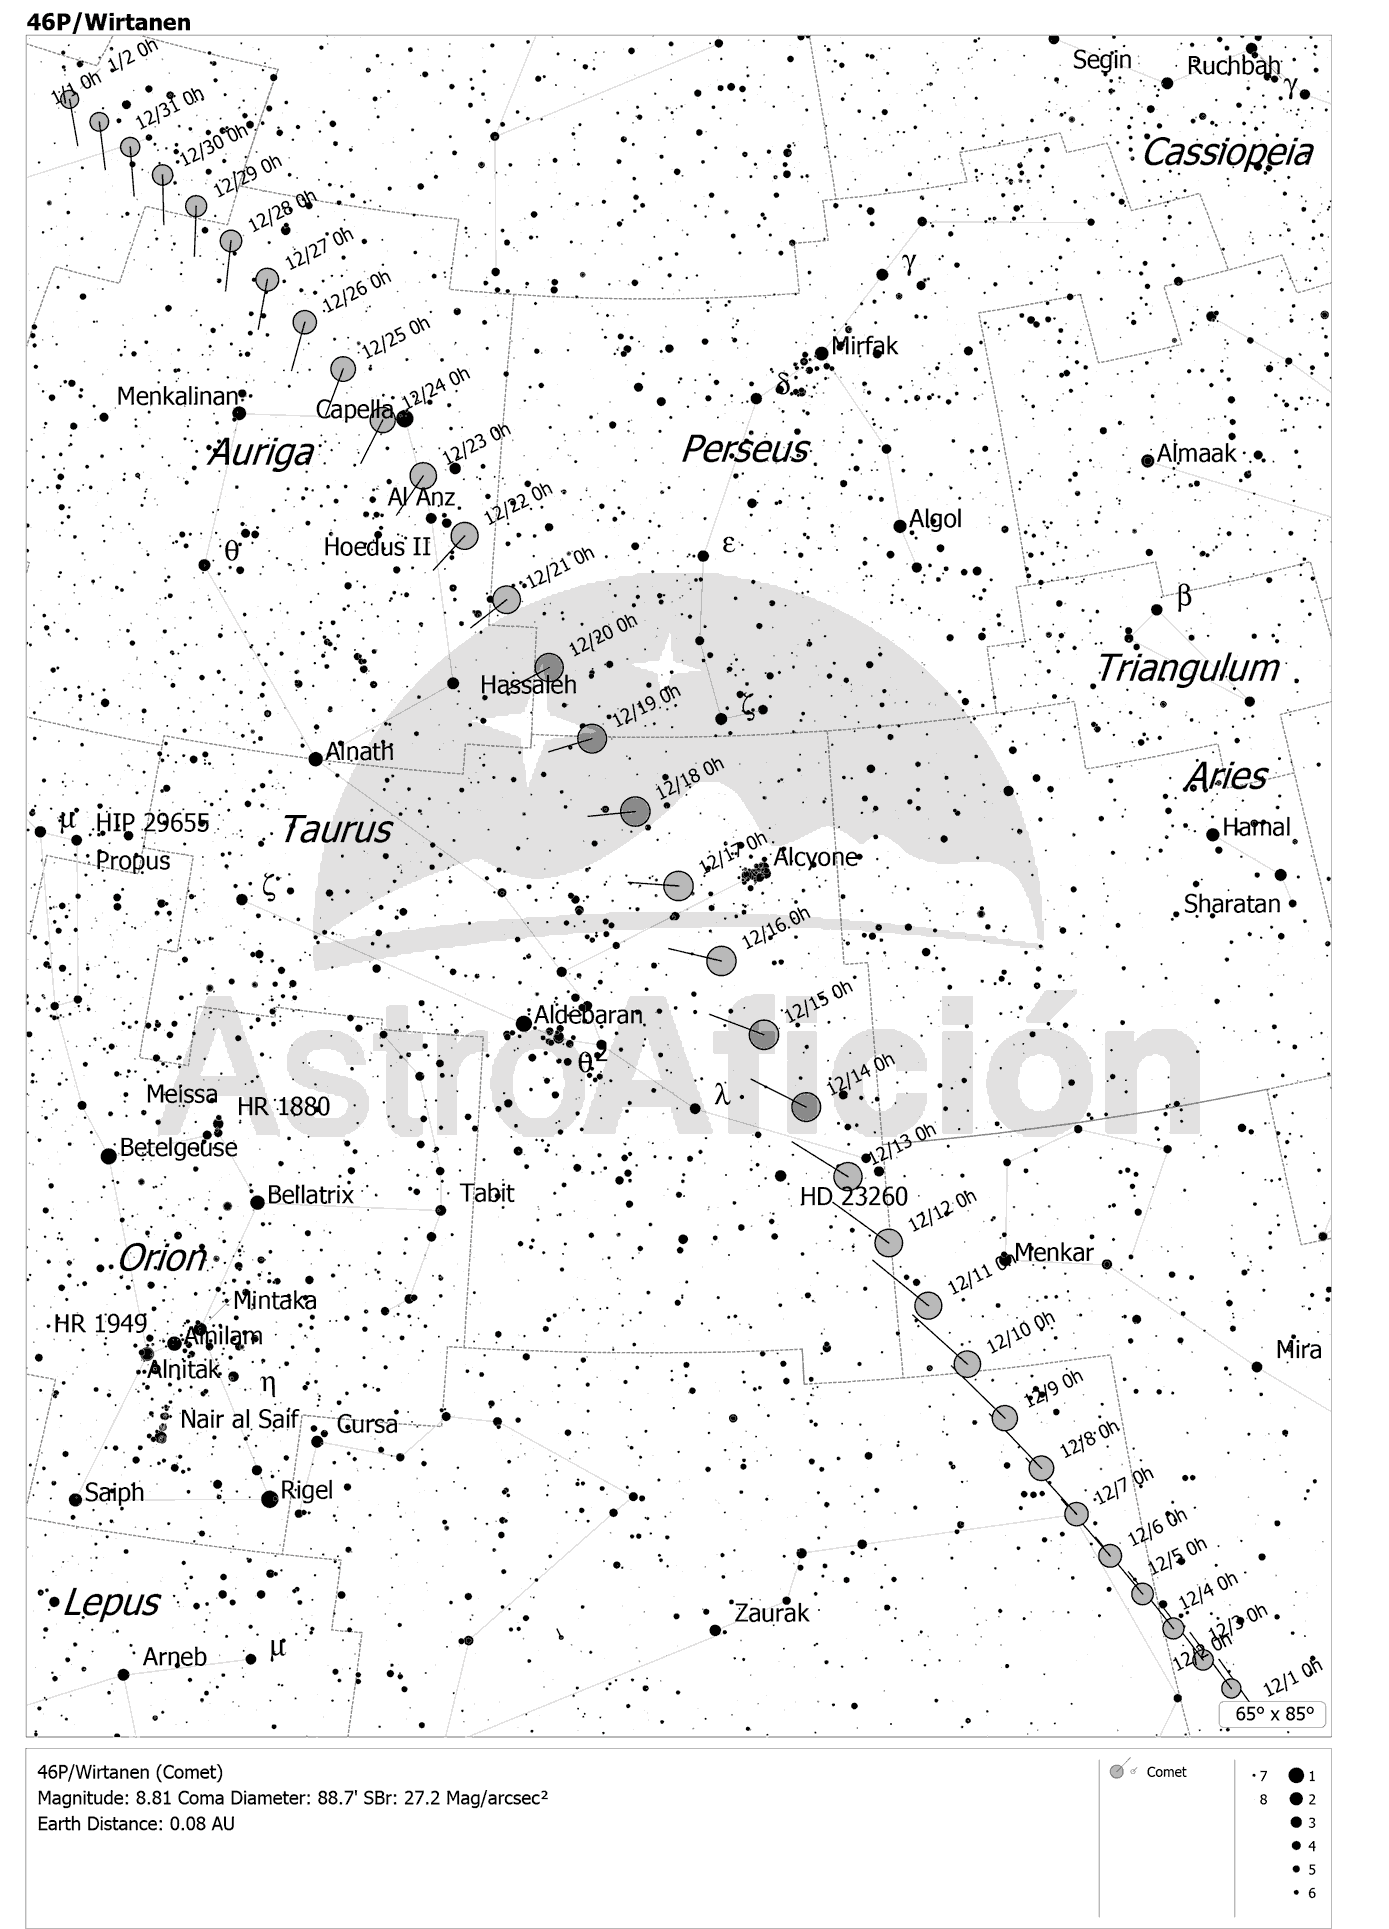 Localización del Cometa 46P/Wirtanen en diciembre de 2018